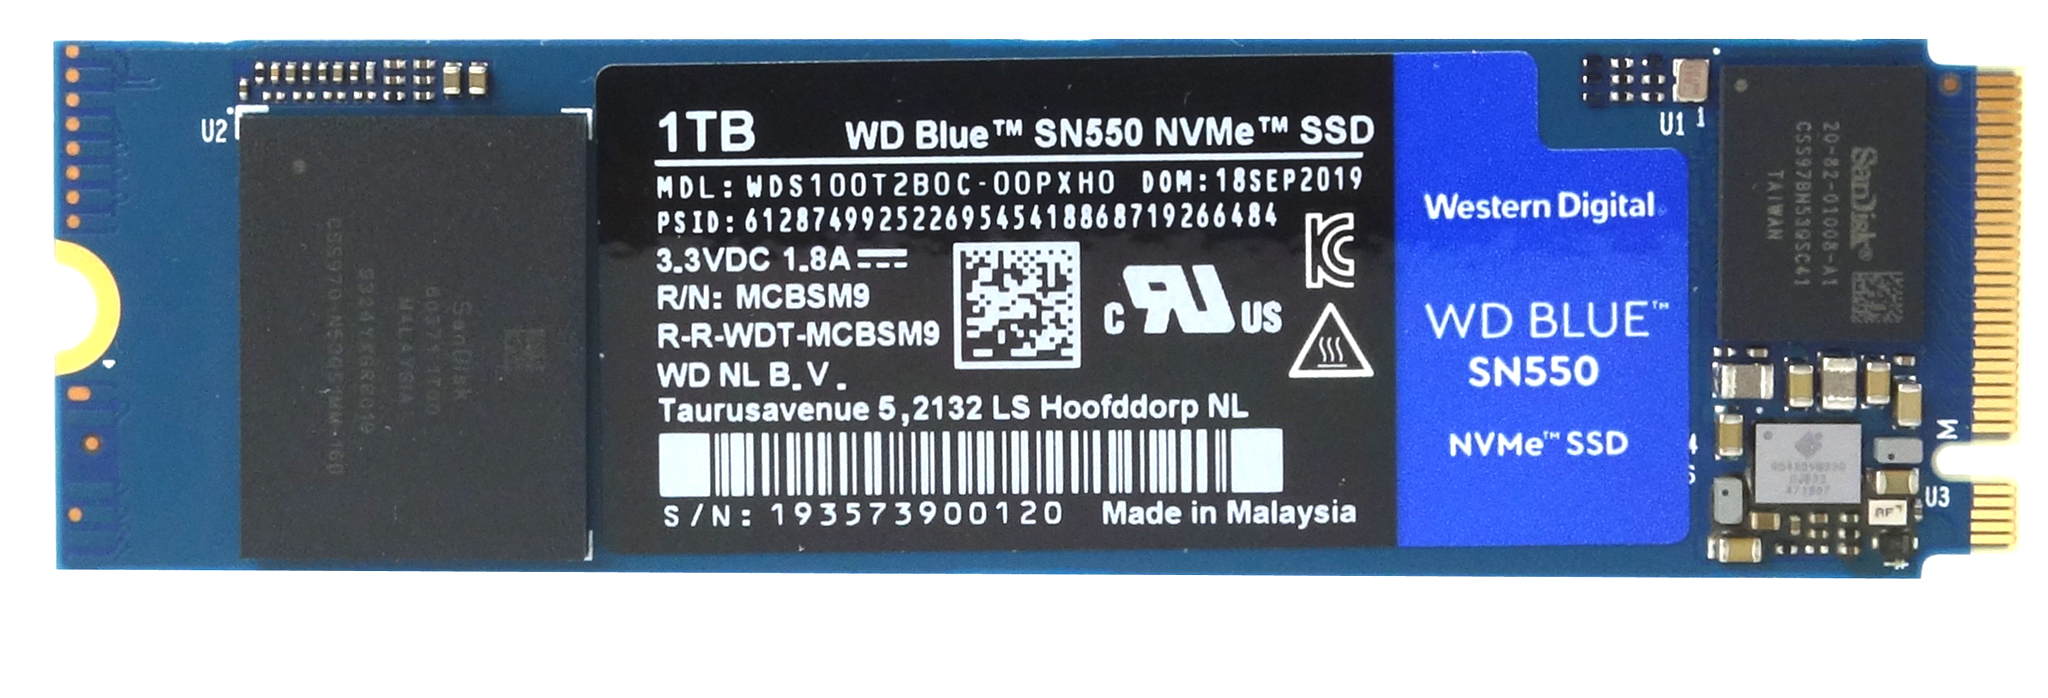 very tuition fee rumor WD Blue SN550 1TB SSD Review | KitGuru